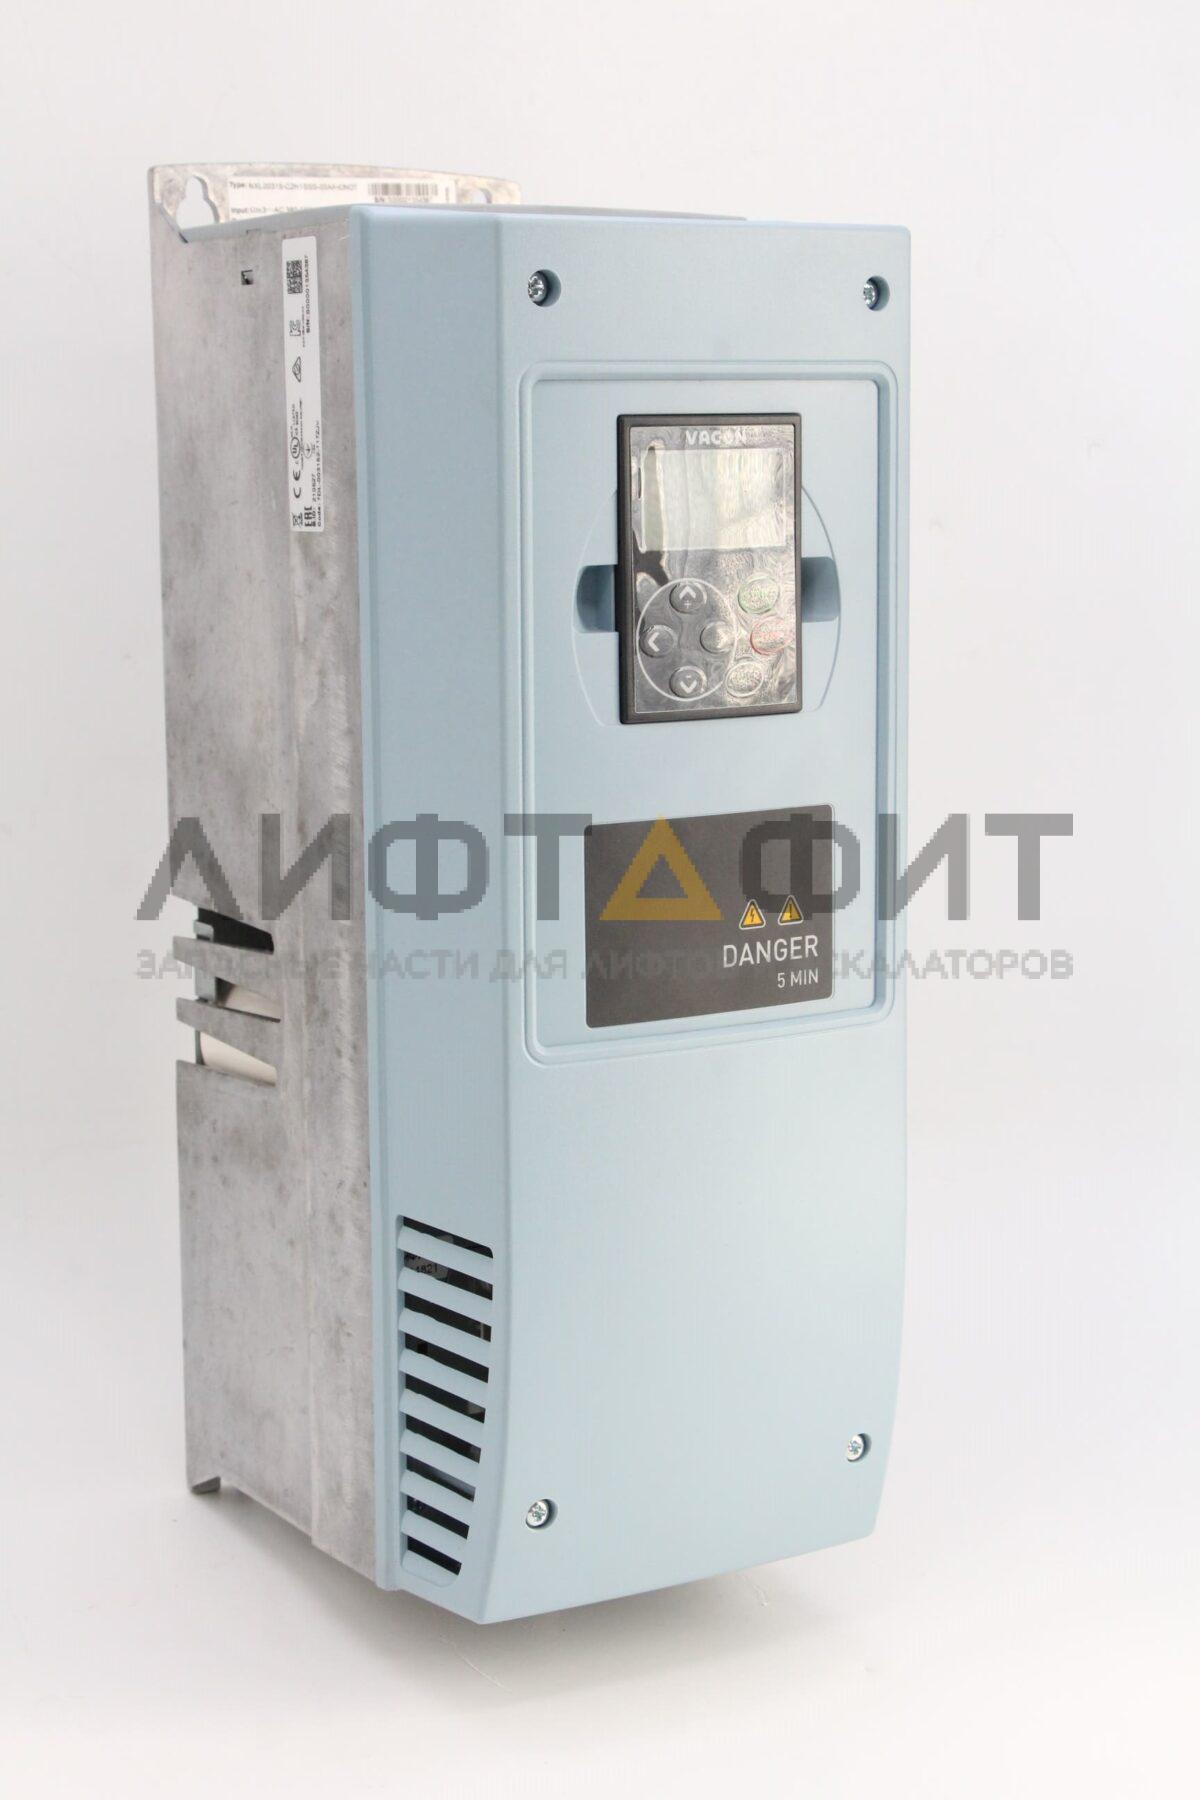 Частотный преобразователь 11 кВт, NXL00005V264 Vacon, KM50005141, Kone